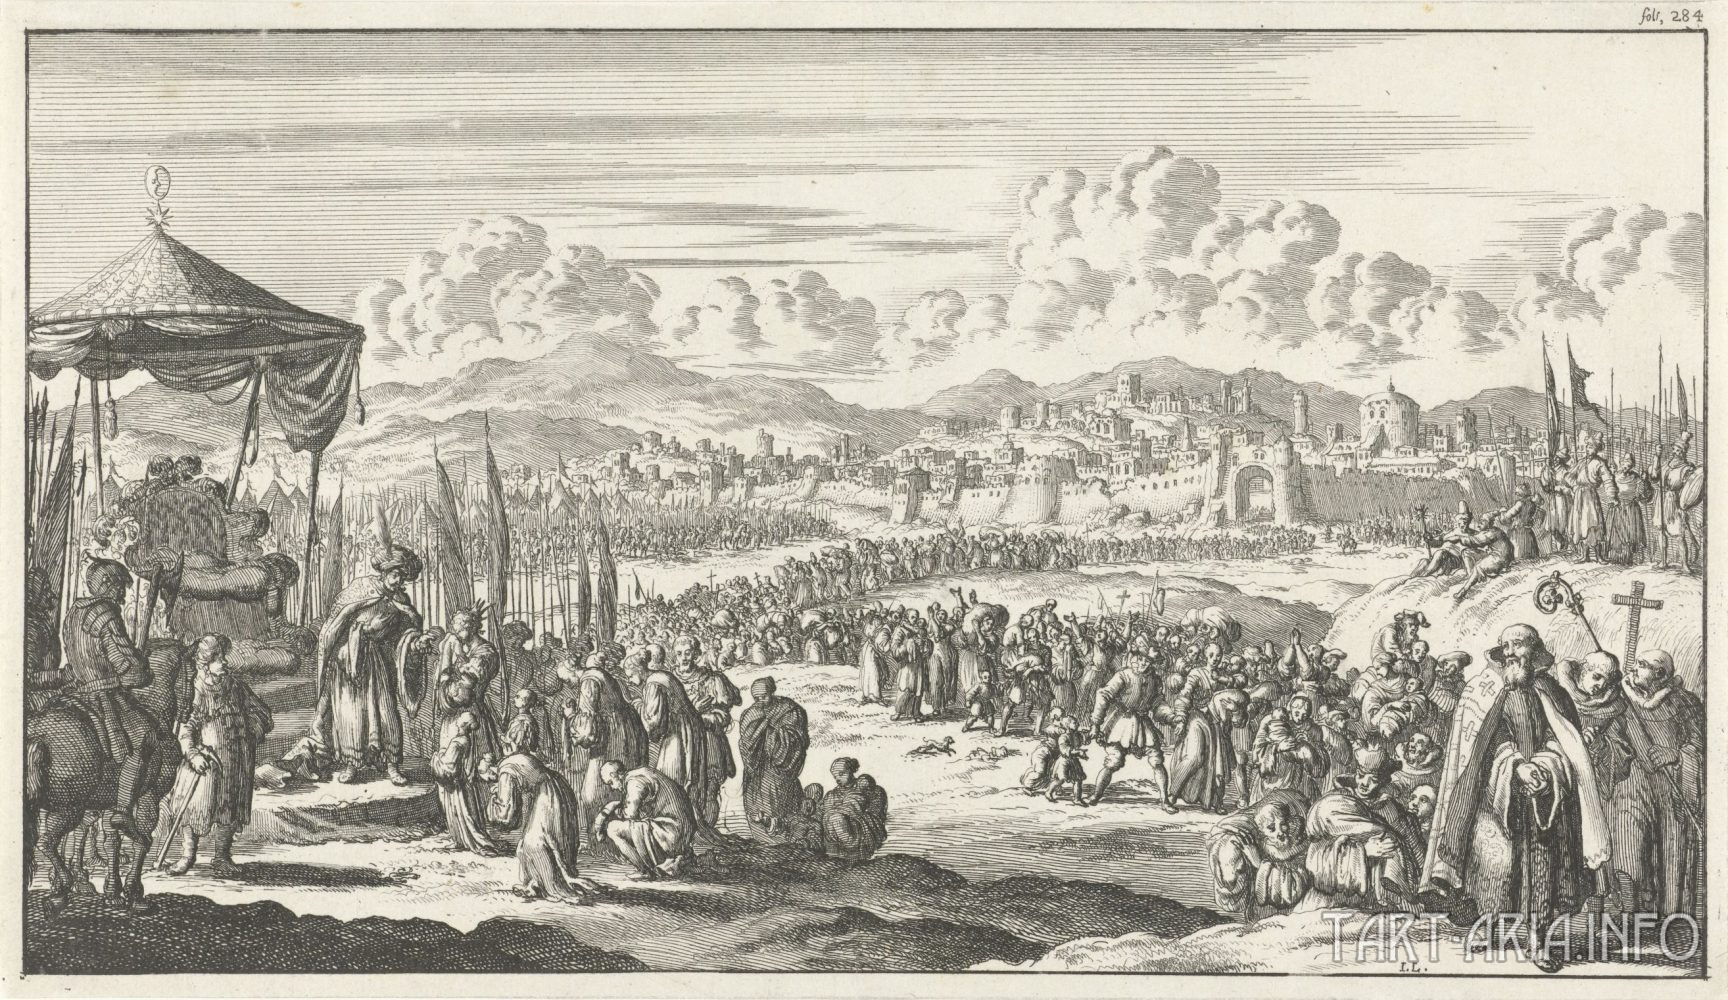 Recapture of Jerusalem in 1187 CE by Saladin (Engraved by Jan Luyken in 1683).